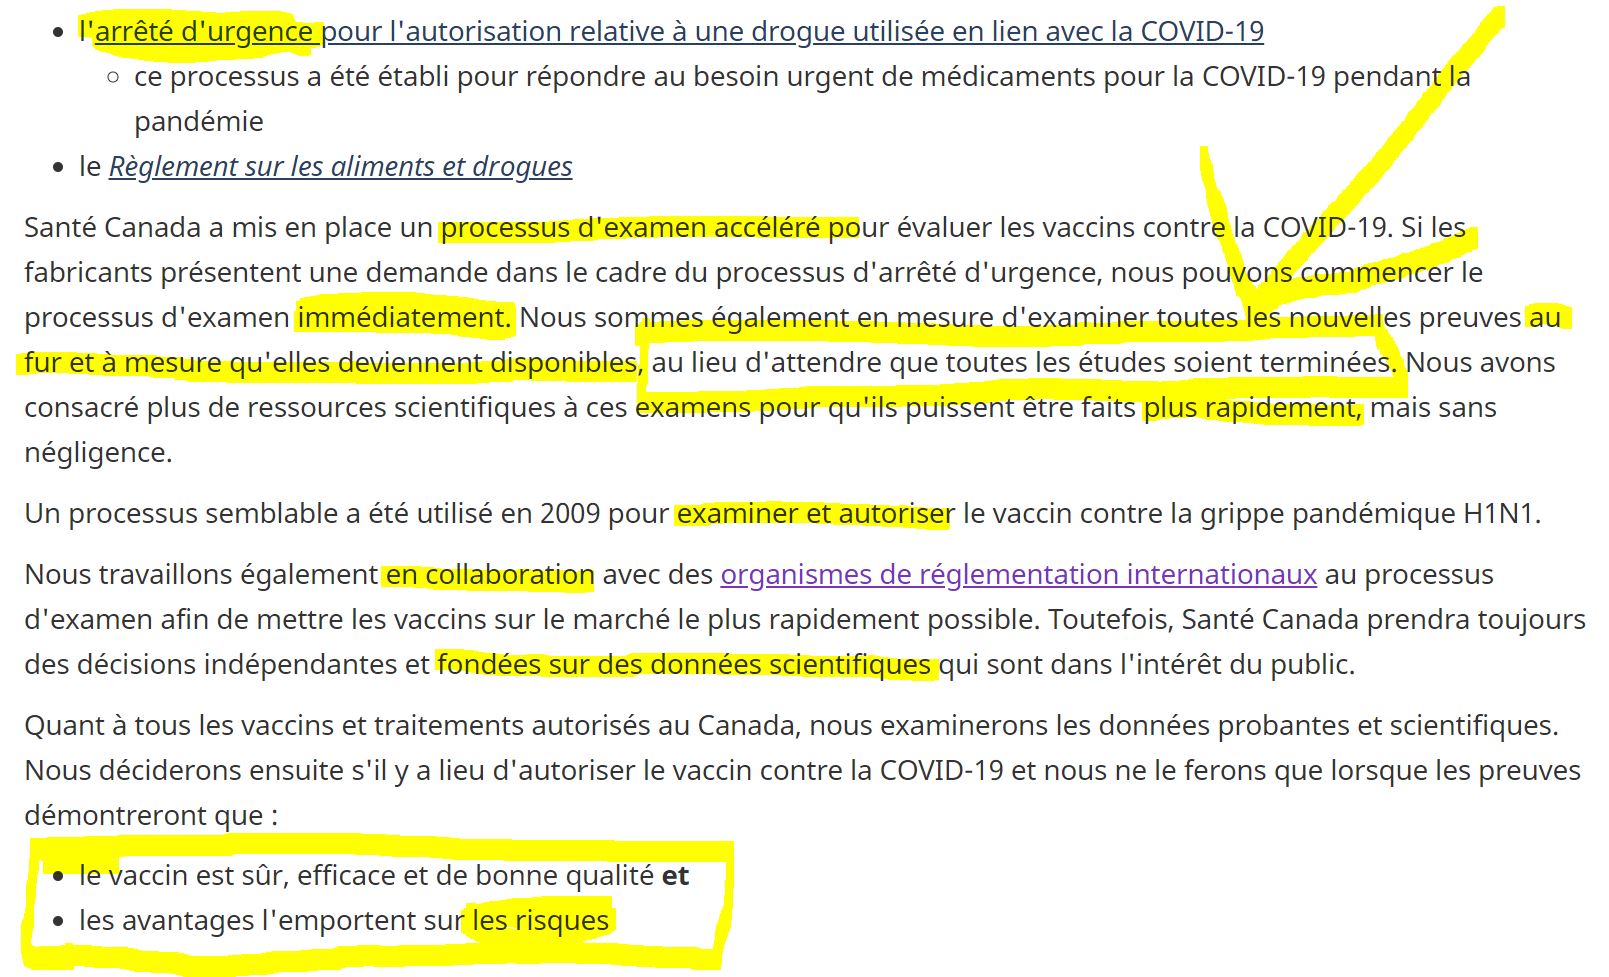 les-pretentions-de-sante-canada-en-regard-des-examens-et-autorisations-des-vaccins-covid.JPG